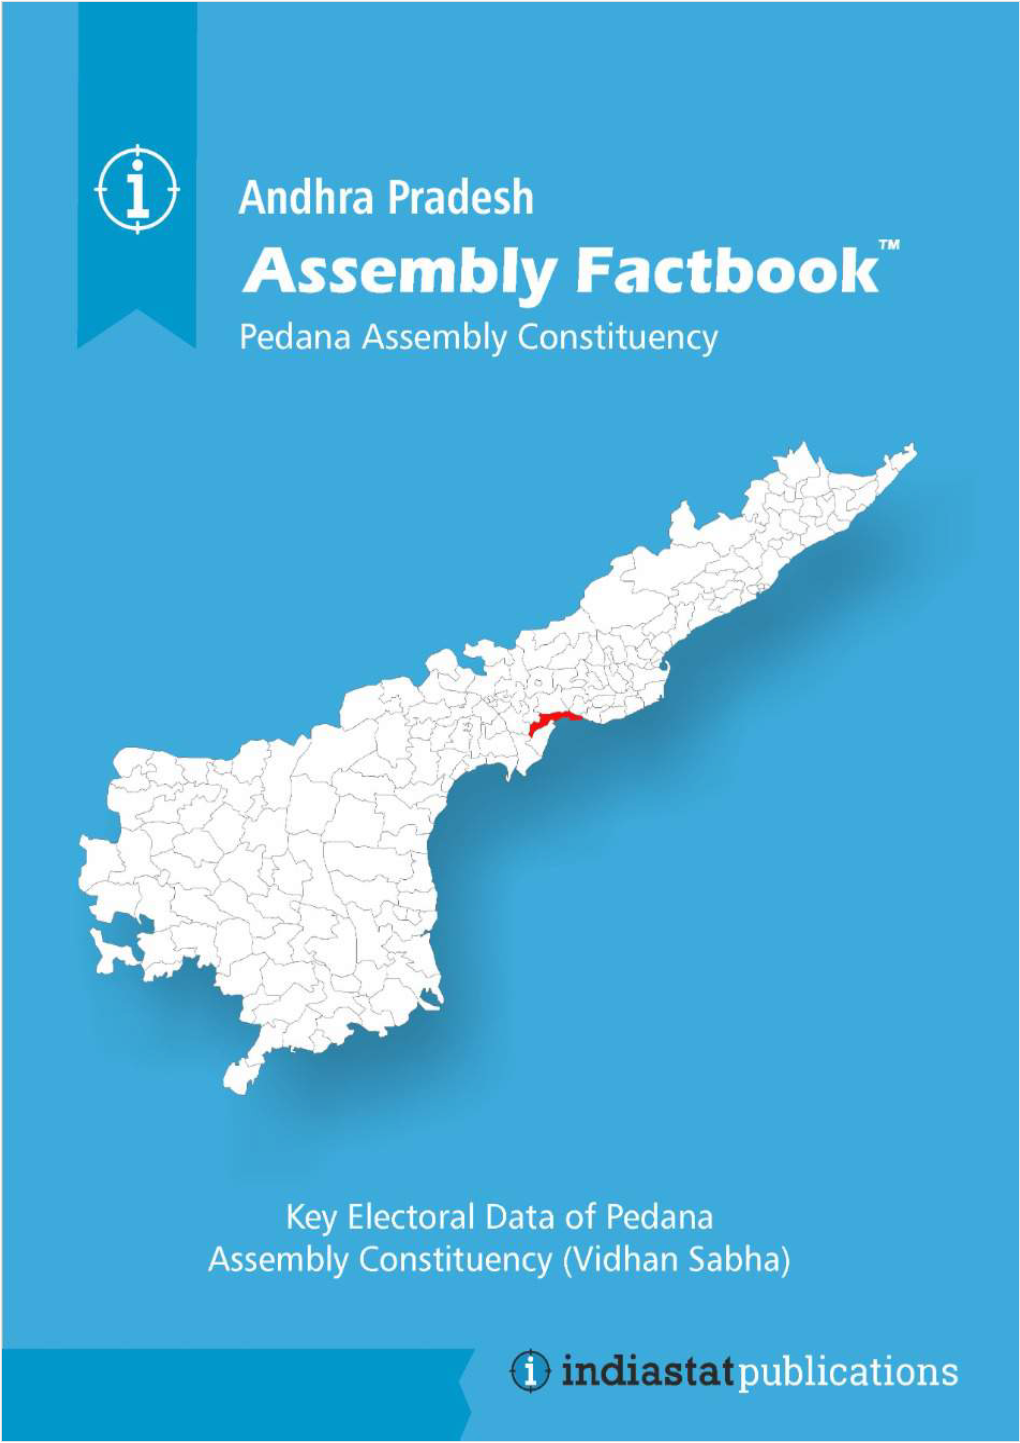 Pedana Assembly Andhra Pradesh Factbook